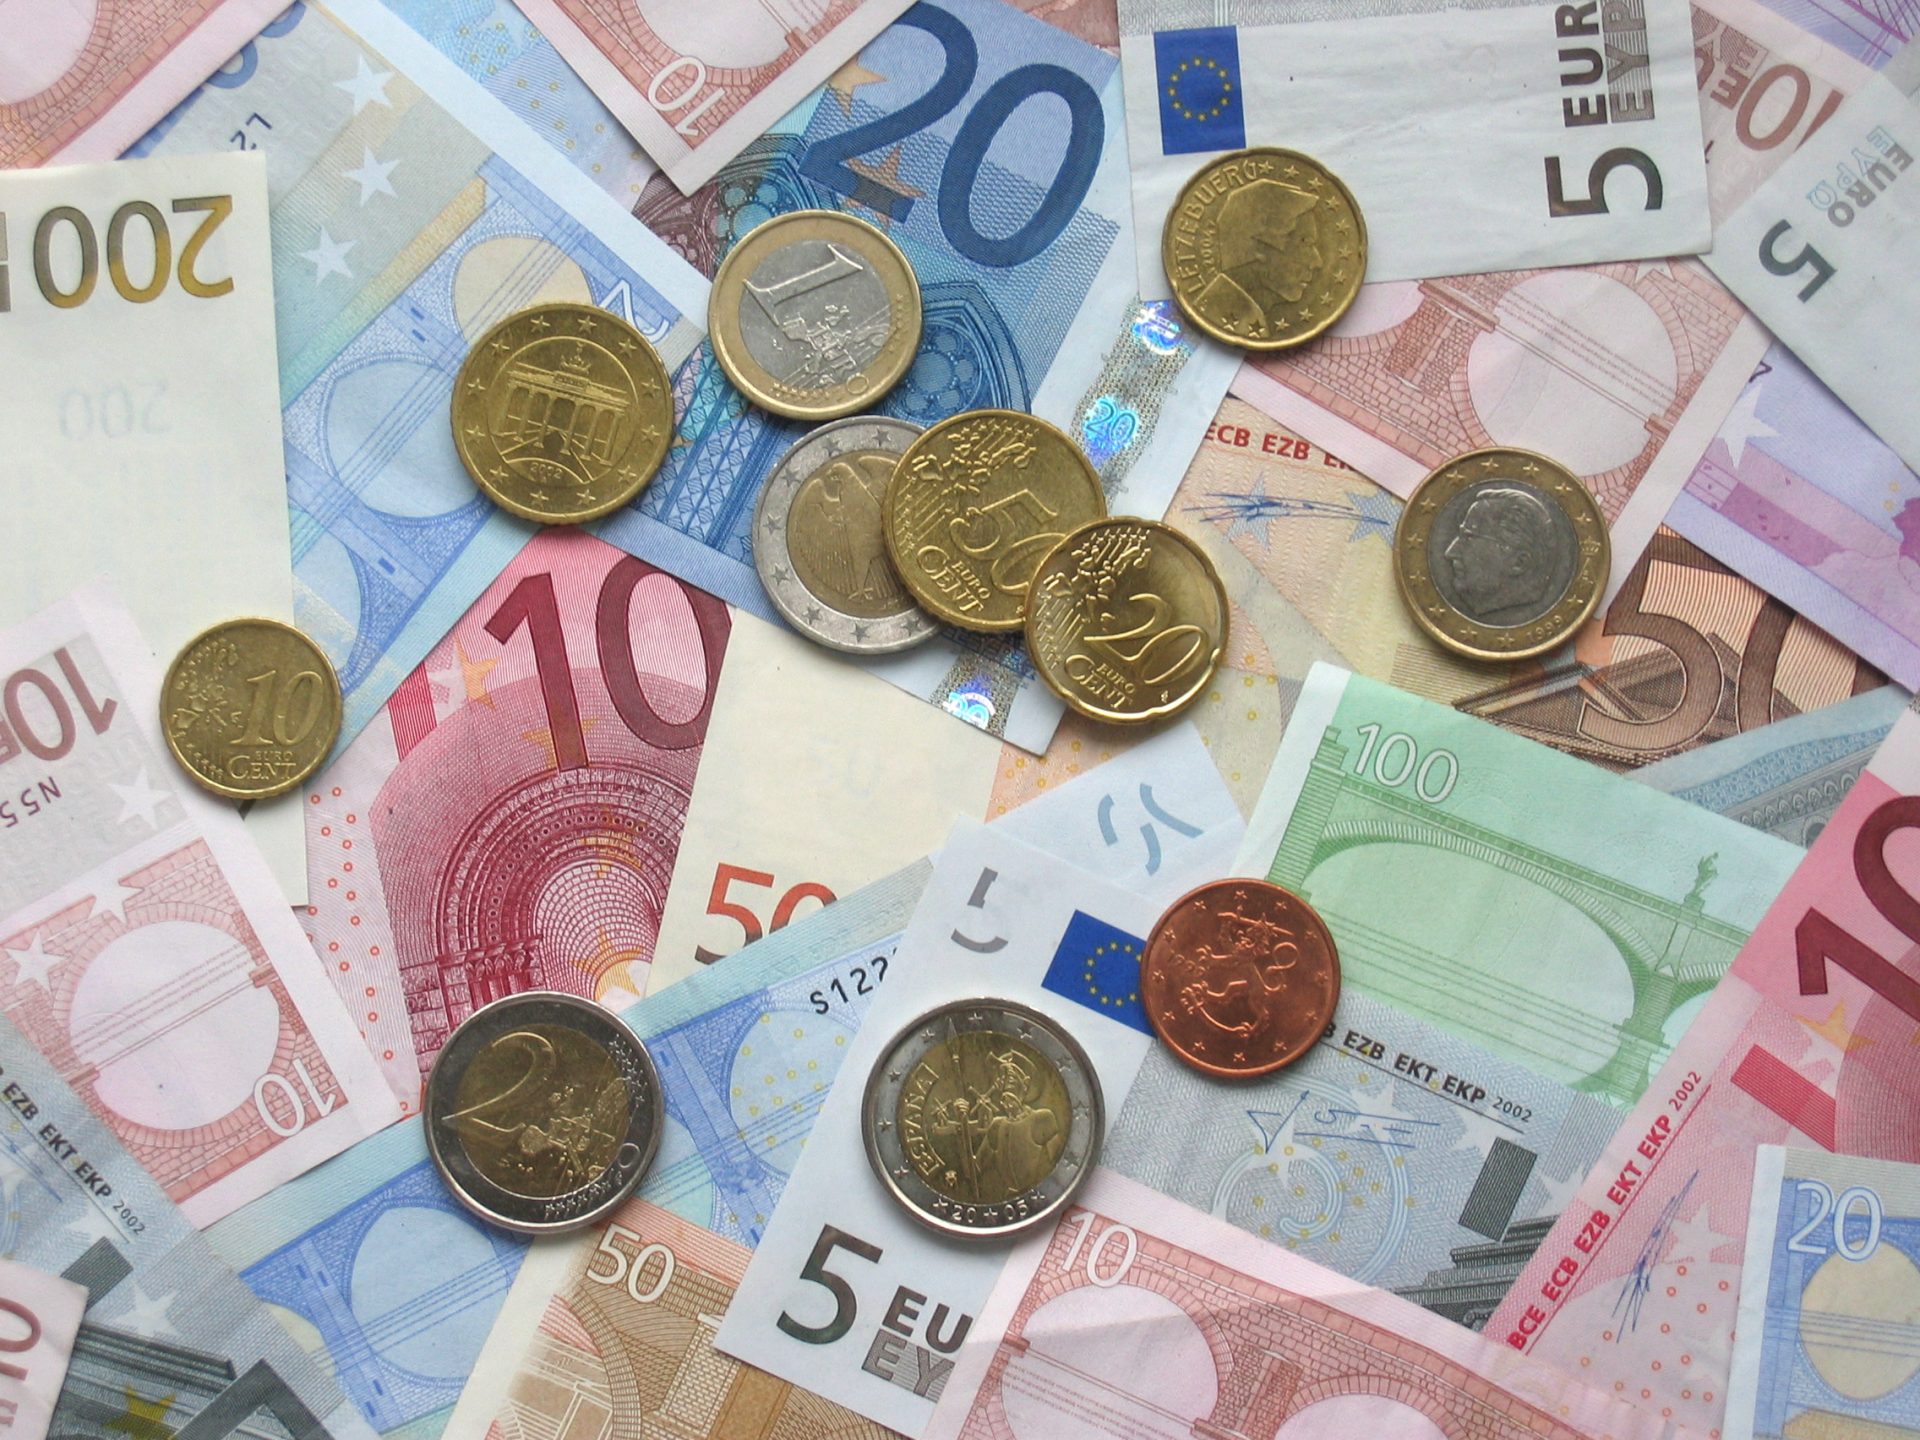 Portugal emite dívida até 1.000 milhões de euros